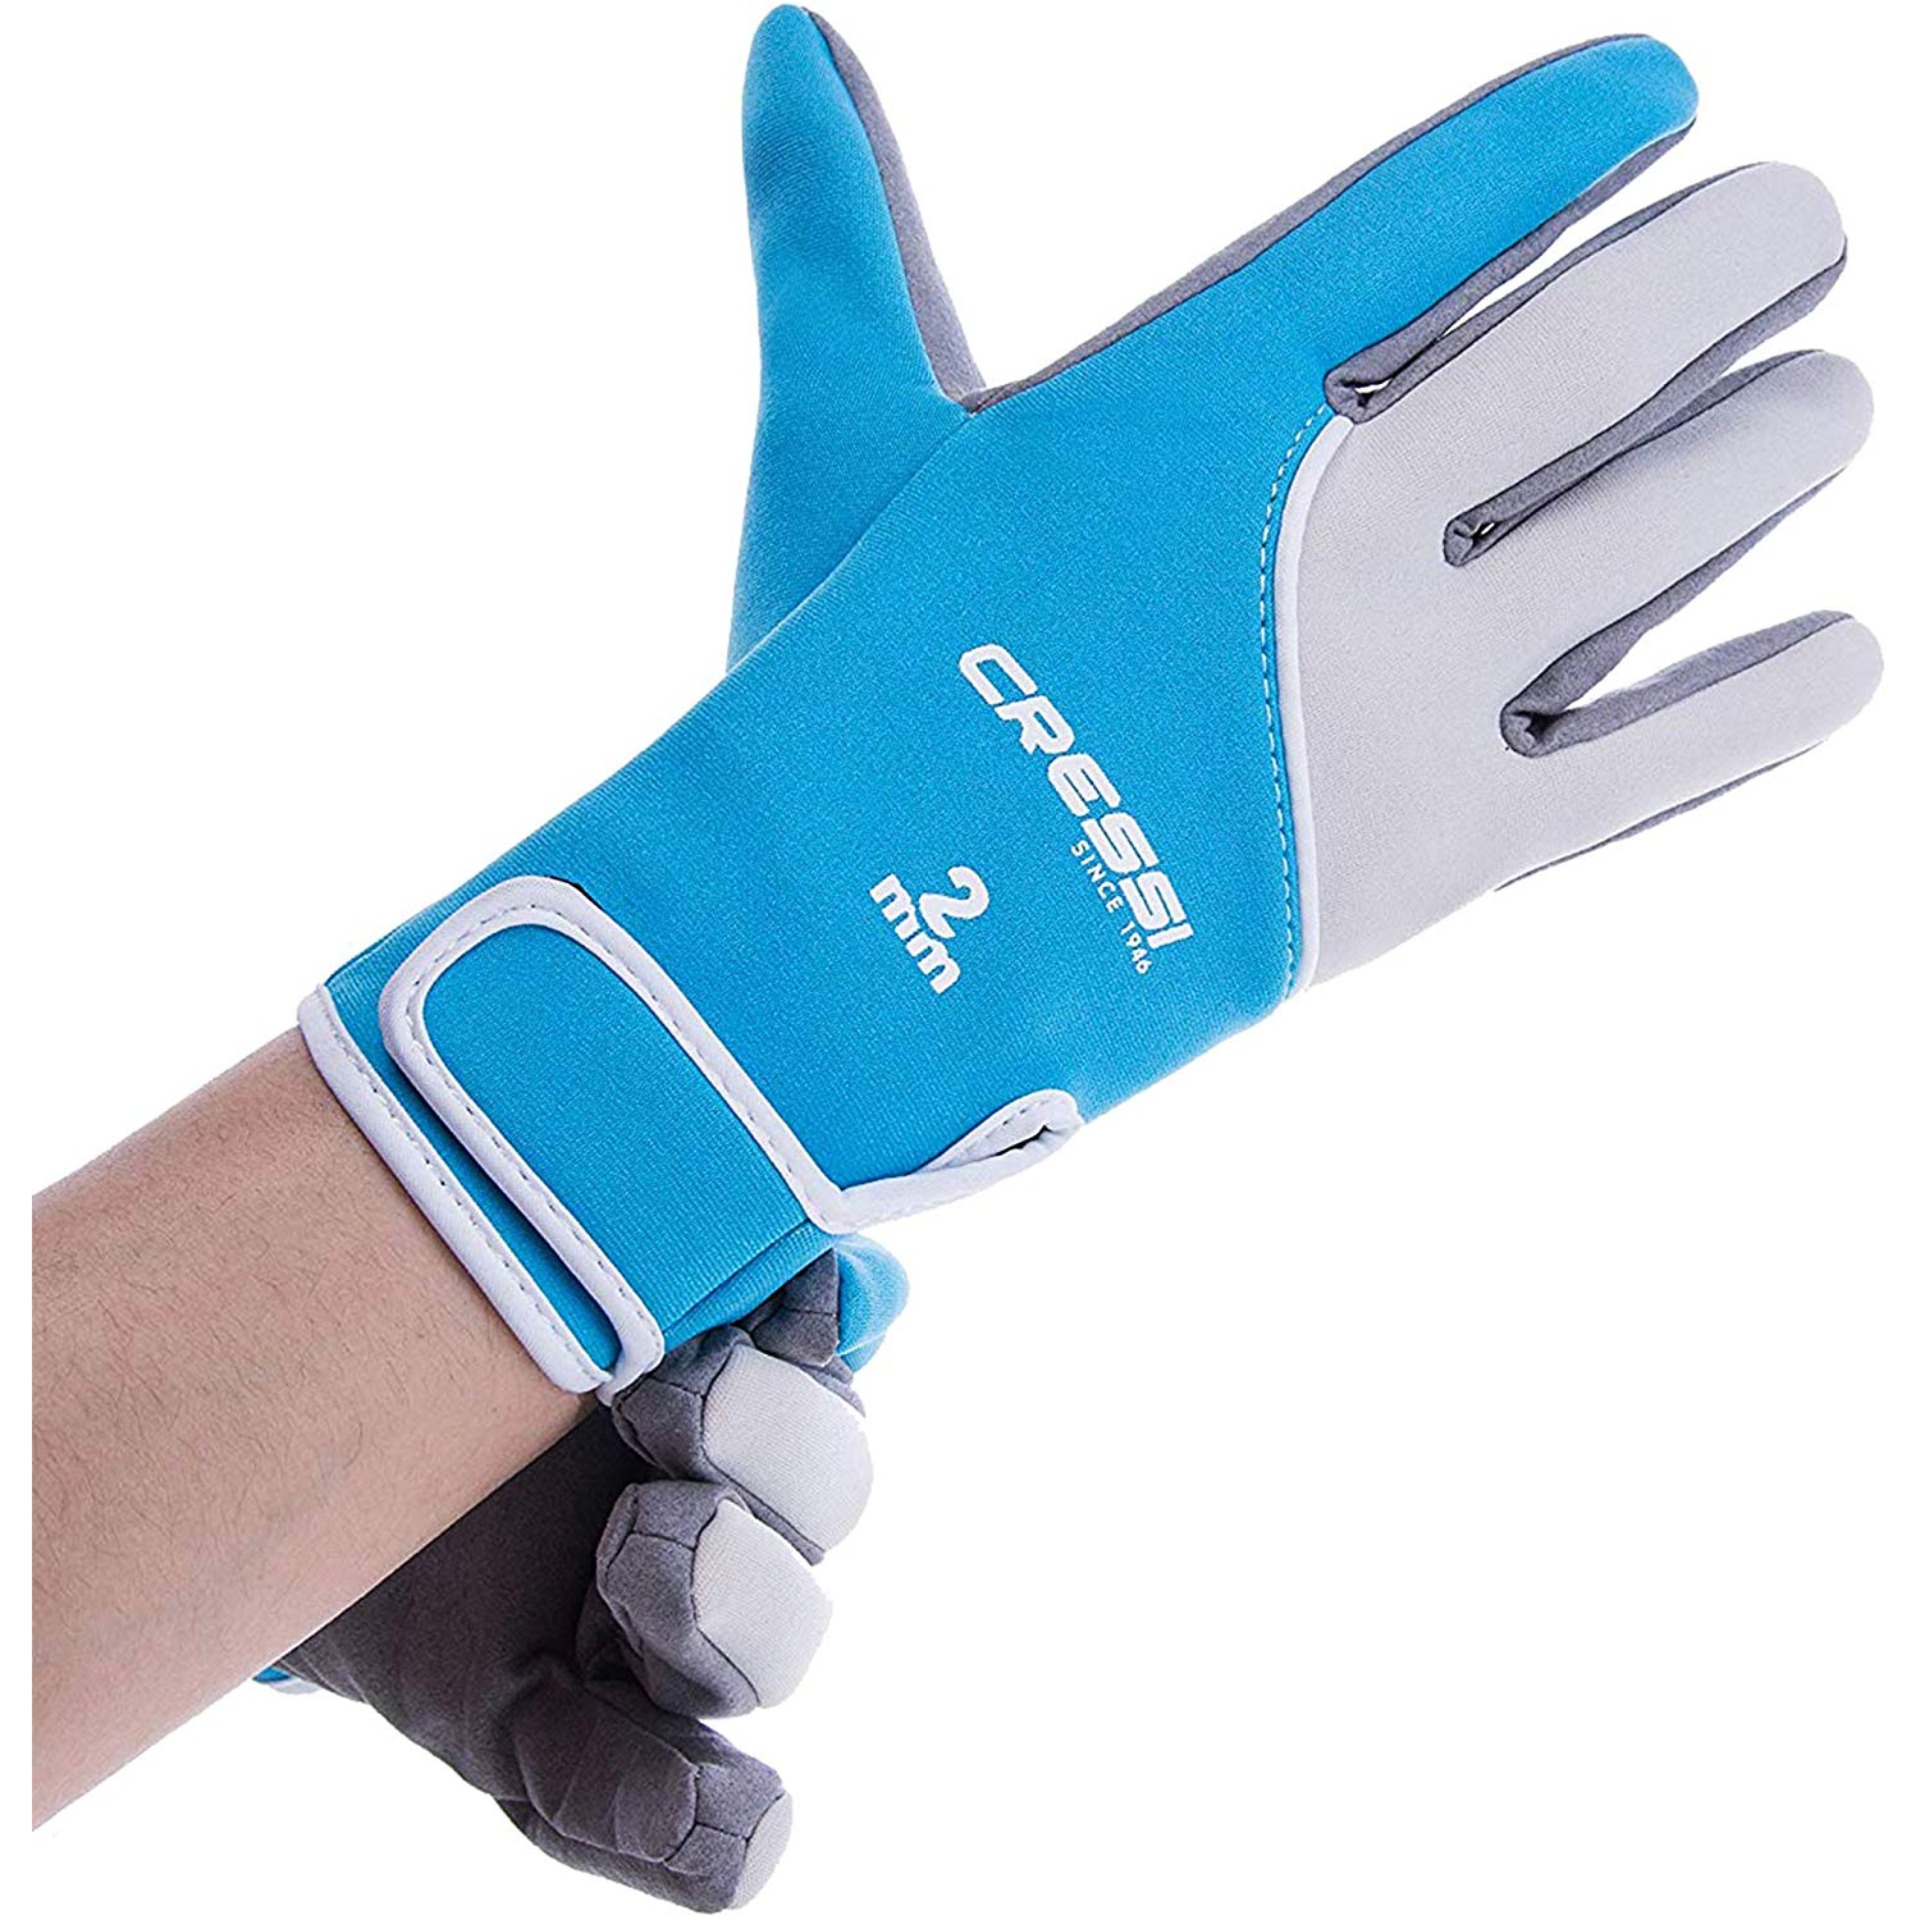 ถุงมือ ถุงมือสำหรับกีฬาทางน้ำ ถุงมือของนักดำน้ำ อุปกรณ์กีฬาทางน้ำ อุปกรณ์ดำน้ำ CRESSI 2MM TROPICAL GLOVES